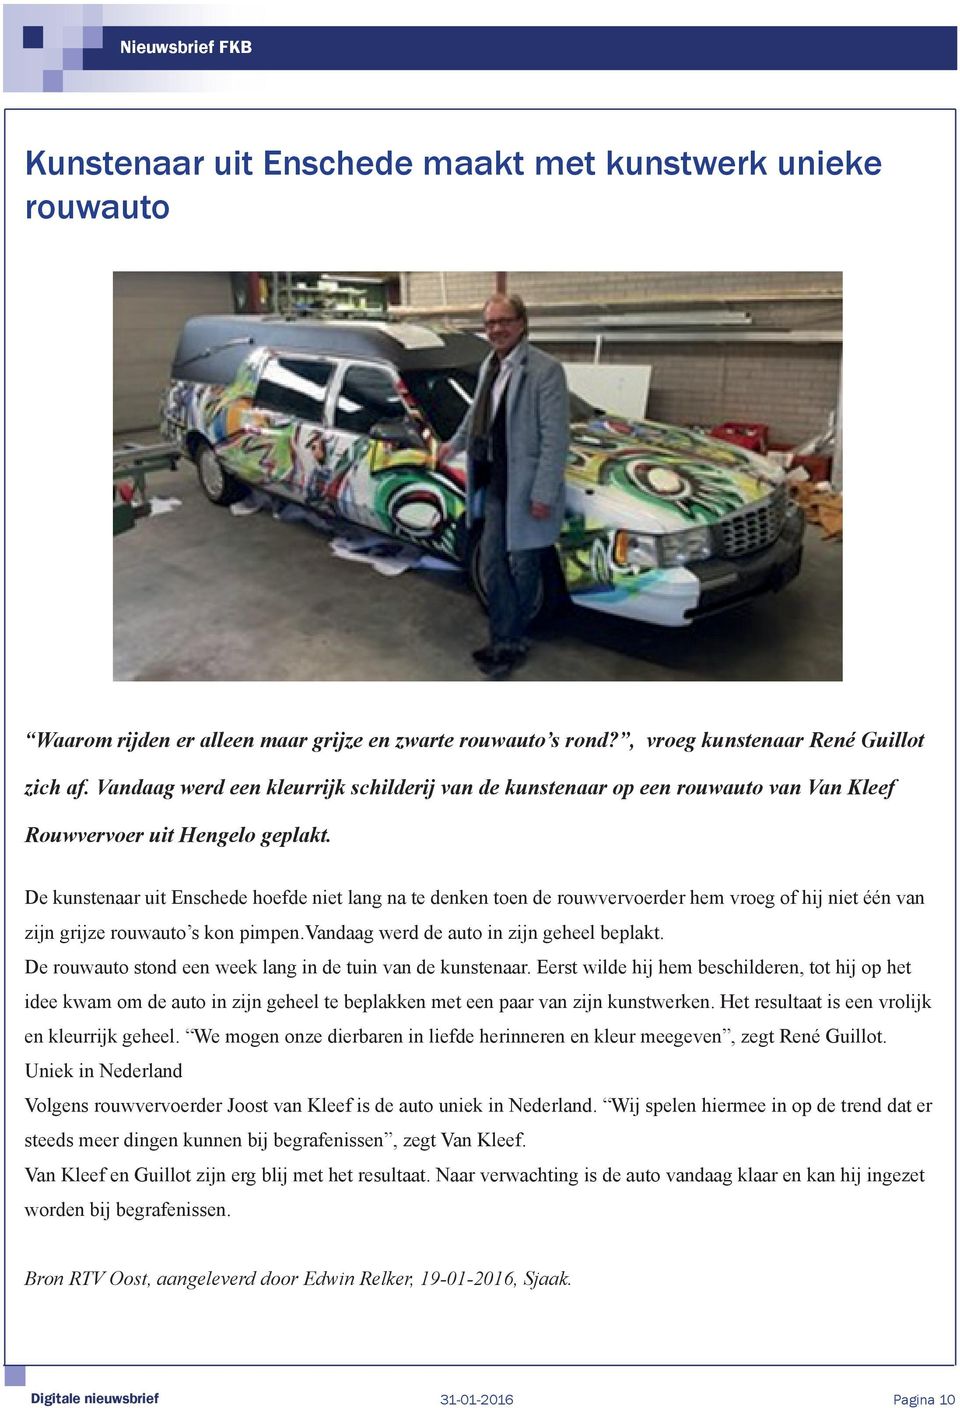 De kunstenaar uit Enschede hoefde niet lang na te denken toen de rouwvervoerder hem vroeg of hij niet één van zijn grijze rouwauto s kon pimpen.vandaag werd de auto in zijn geheel beplakt.